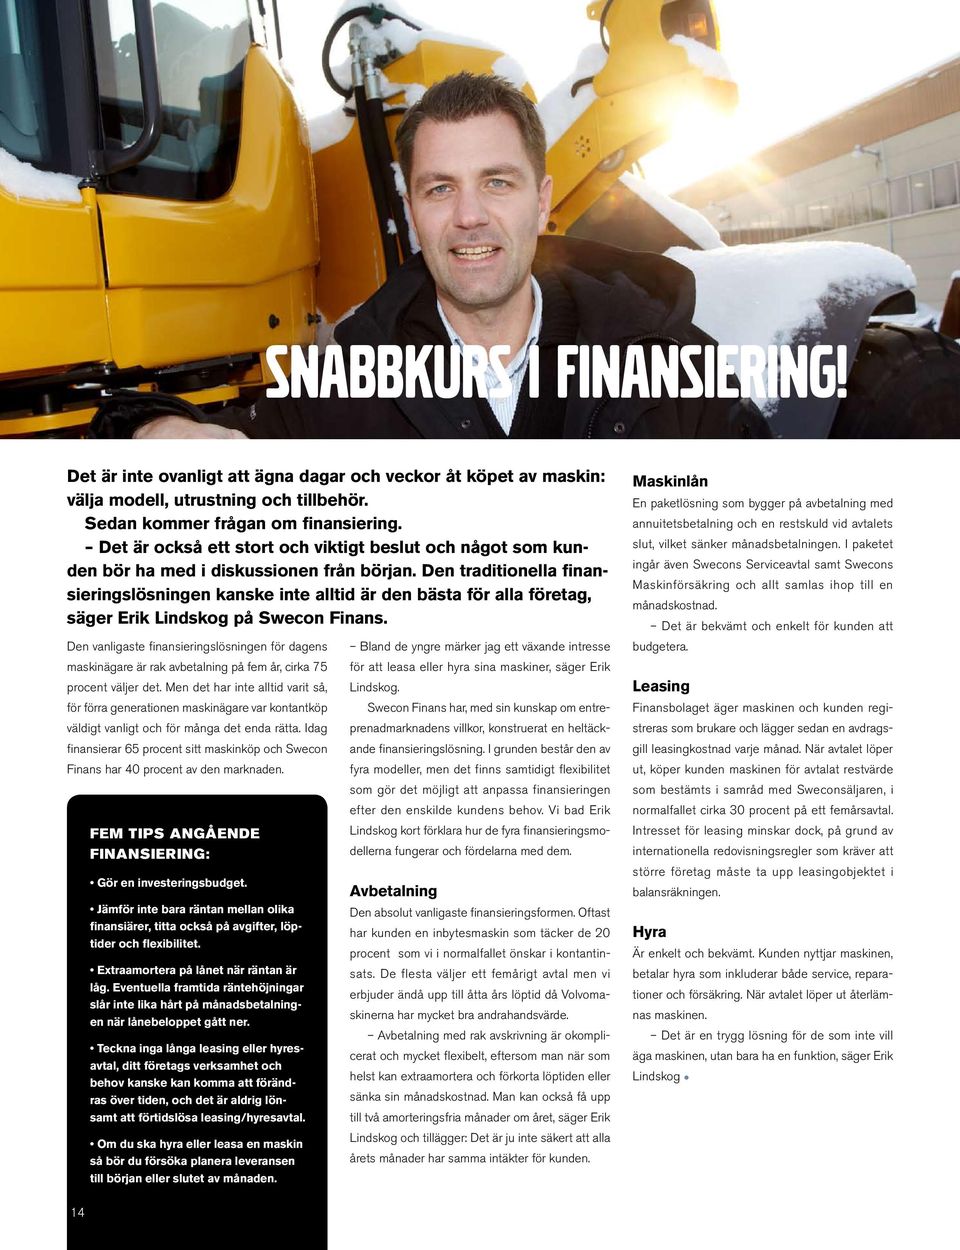 Den traditionella finansieringslösningen kanske inte alltid är den bästa för alla företag, säger Erik Lindskog på Swecon Finans.